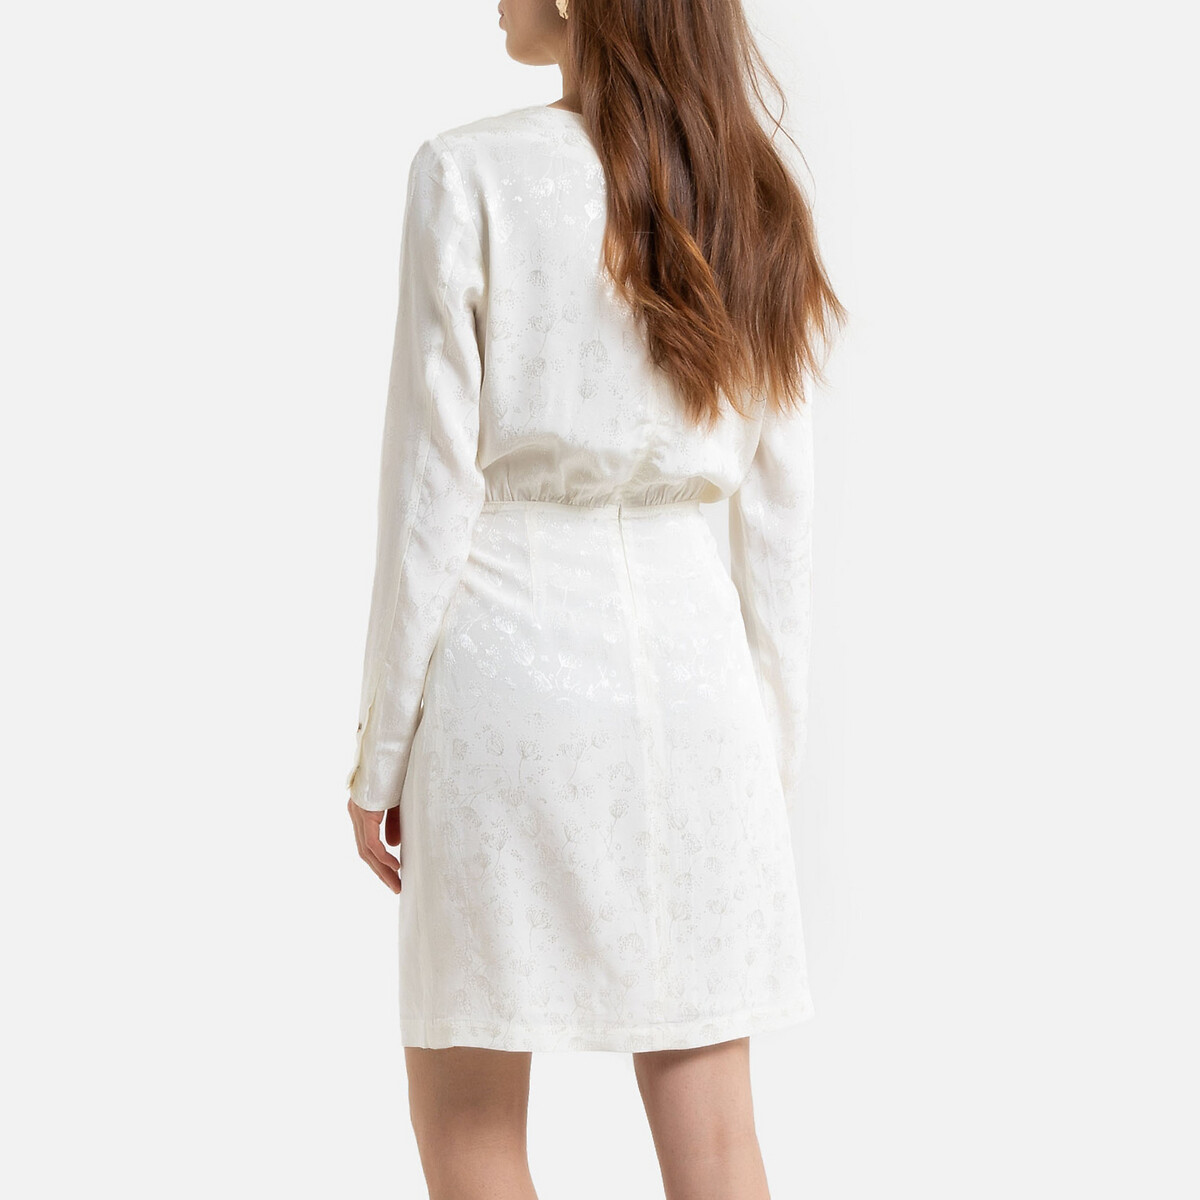 Прямое La Redoute Платье из атласной ткани с длинными рукавами 42 (FR) - 48 (RUS) белый, размер 42 (FR) - 48 (RUS) Платье из атласной ткани с длинными рукавами 42 (FR) - 48 (RUS) белый - фото 4